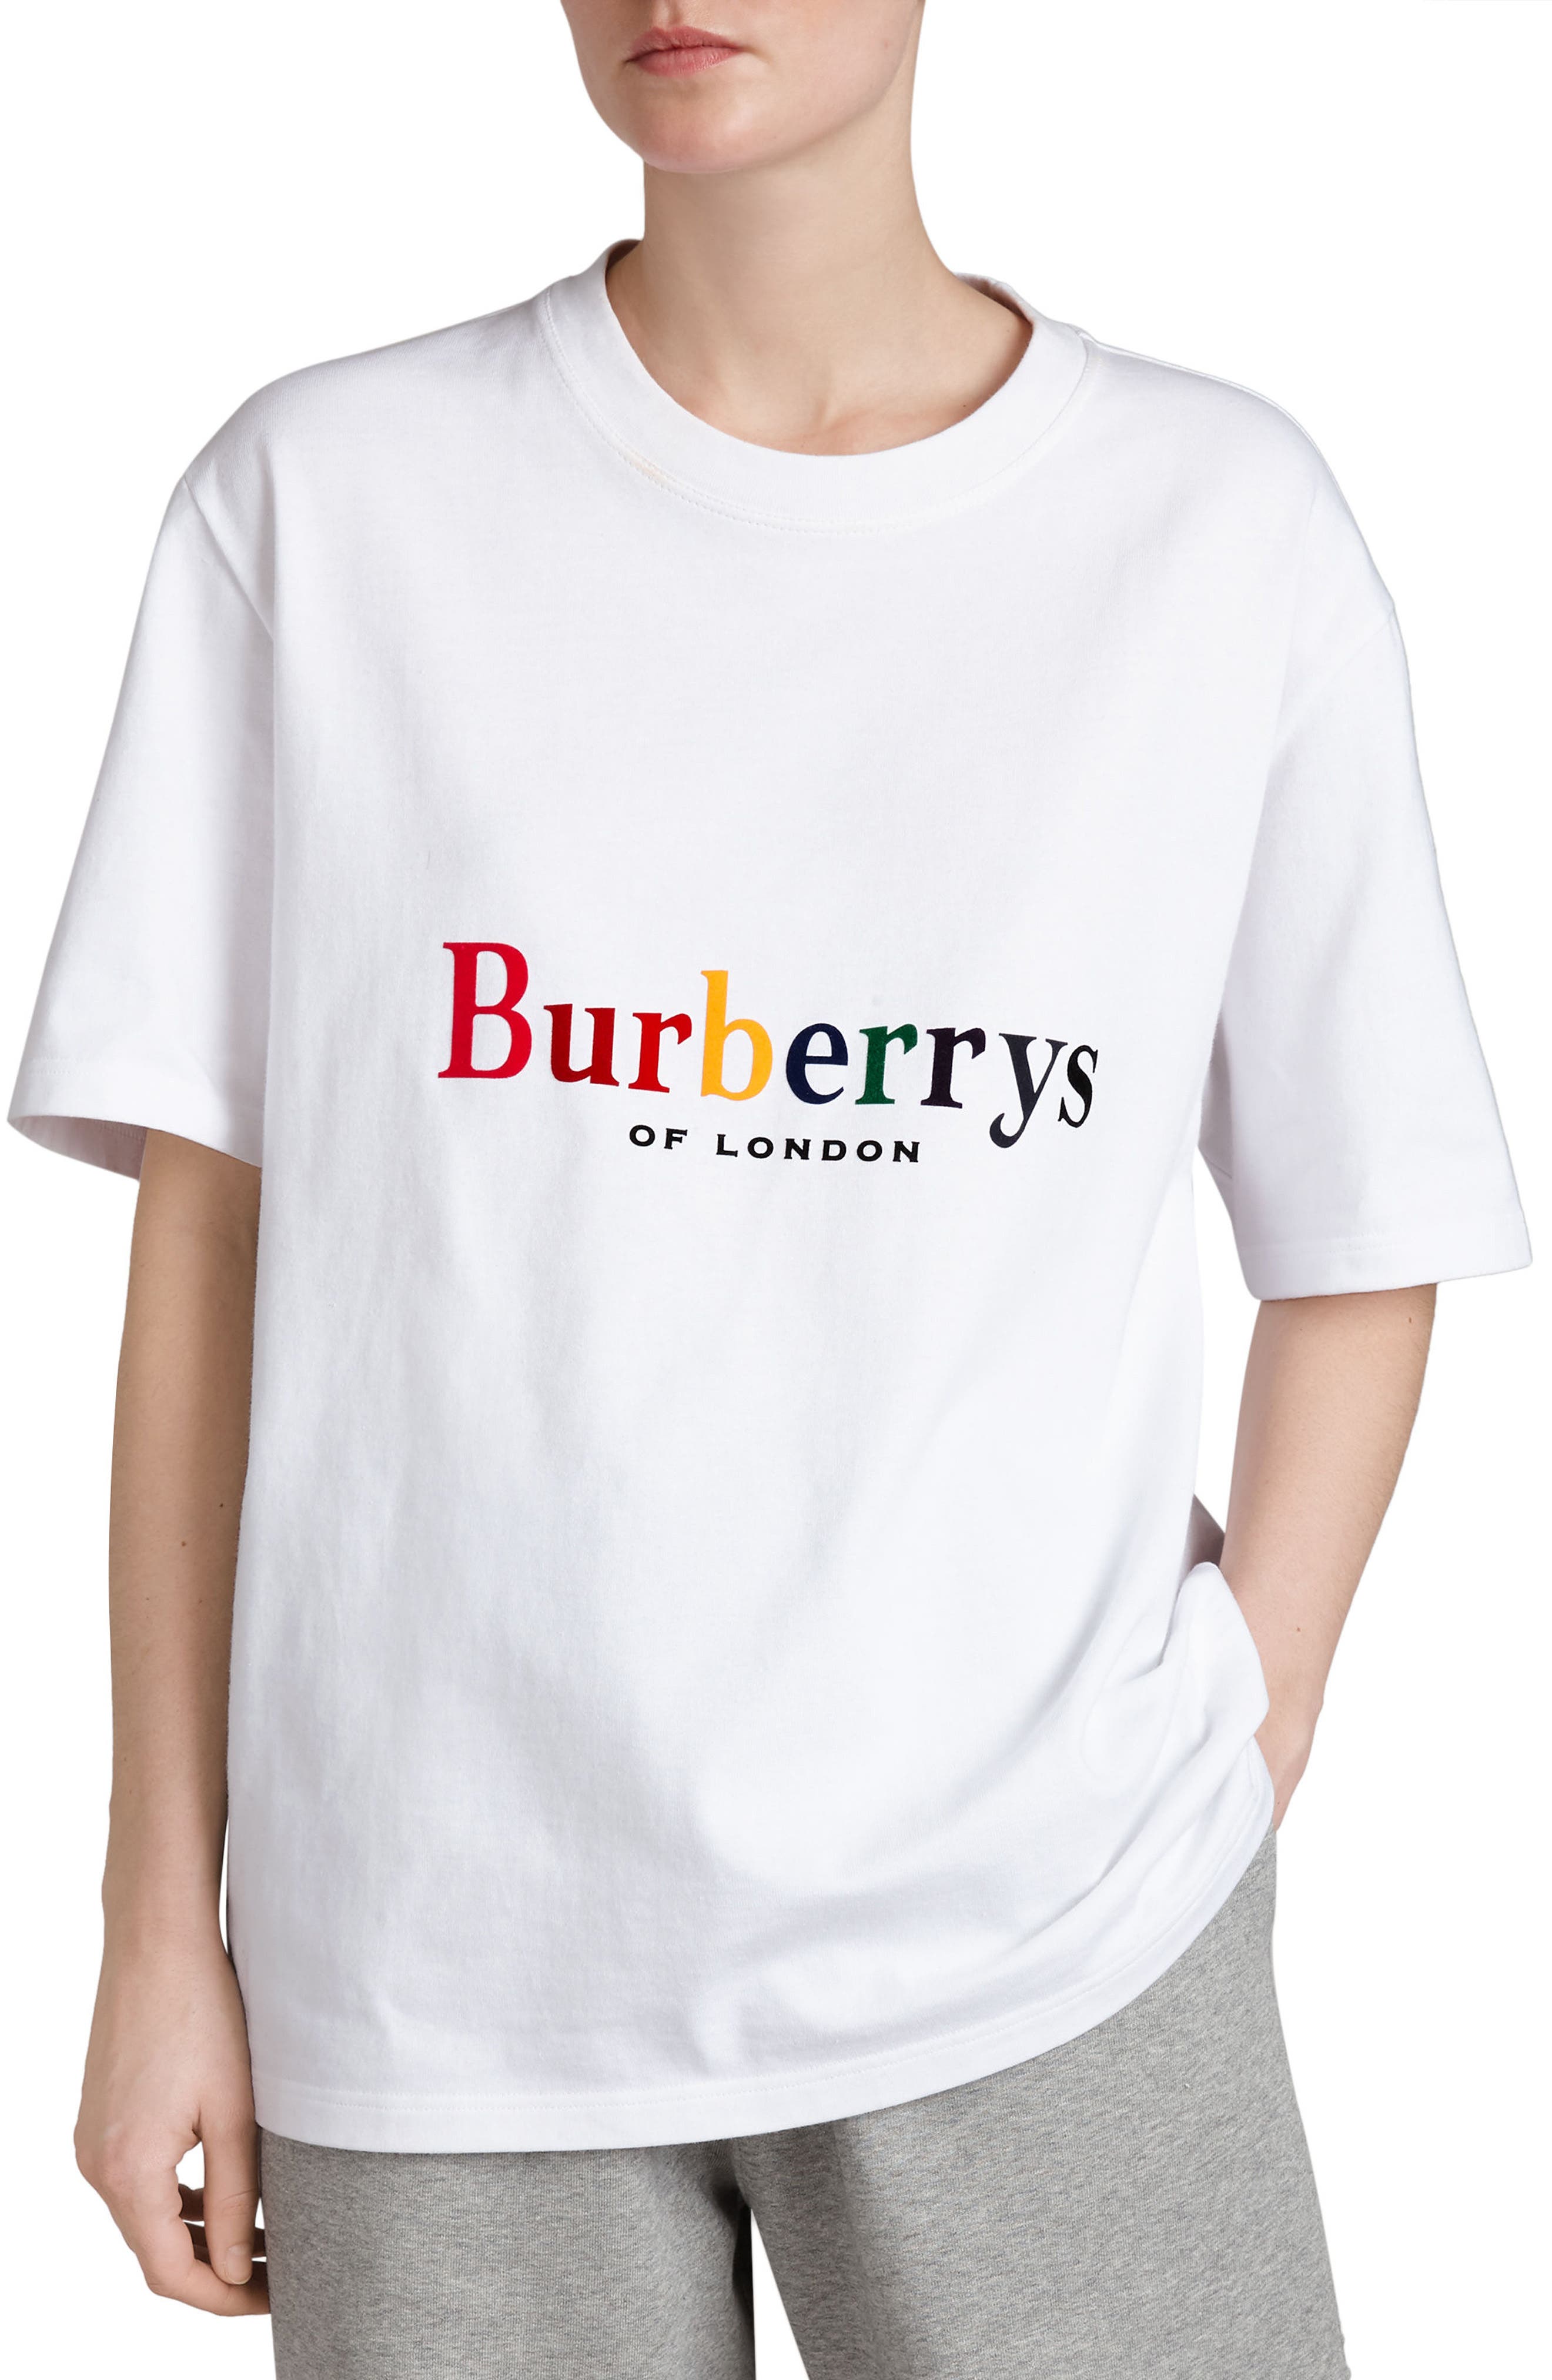 burberrys shirt